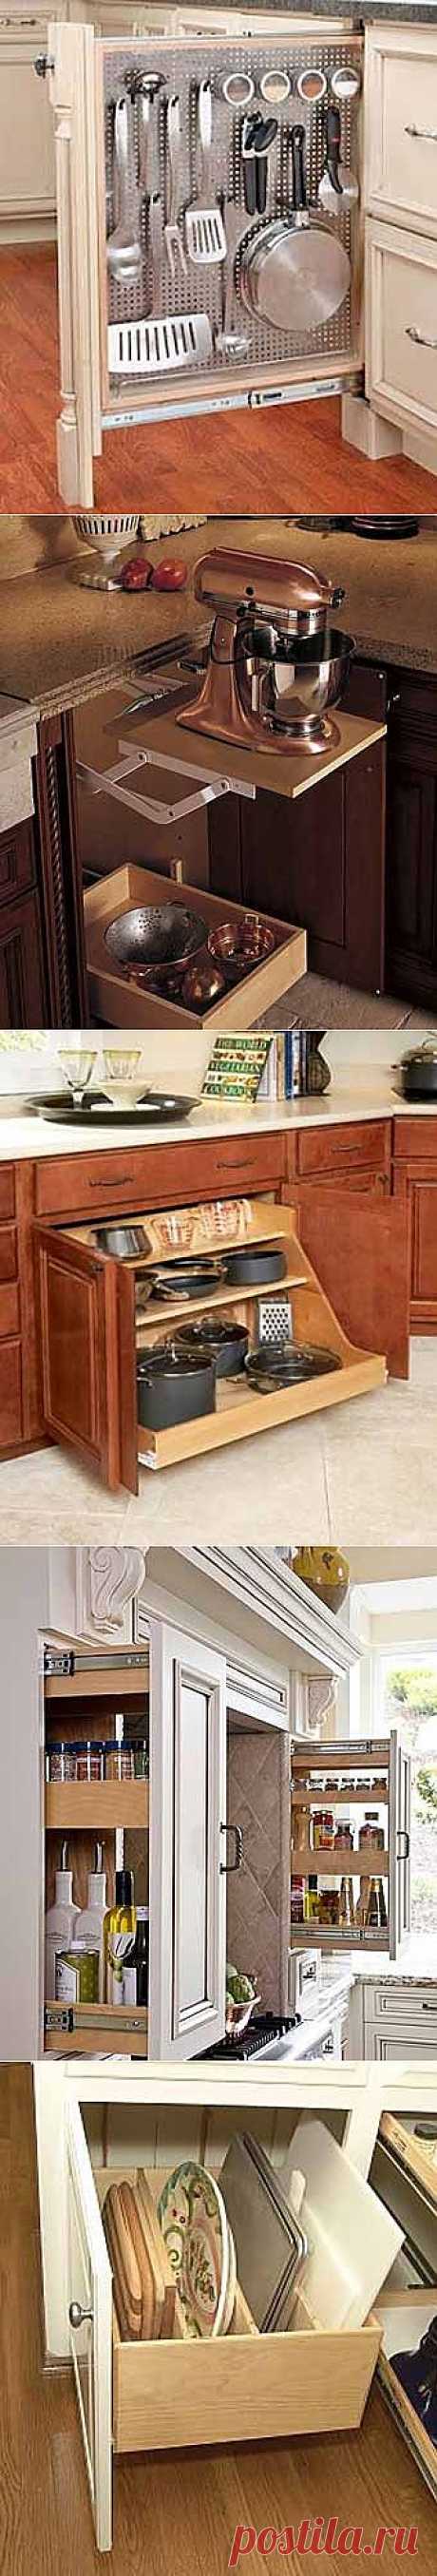 Где хранить посуду на кухне: 12 практичных идей для выдвижных полок - Учимся Делать Все Сами